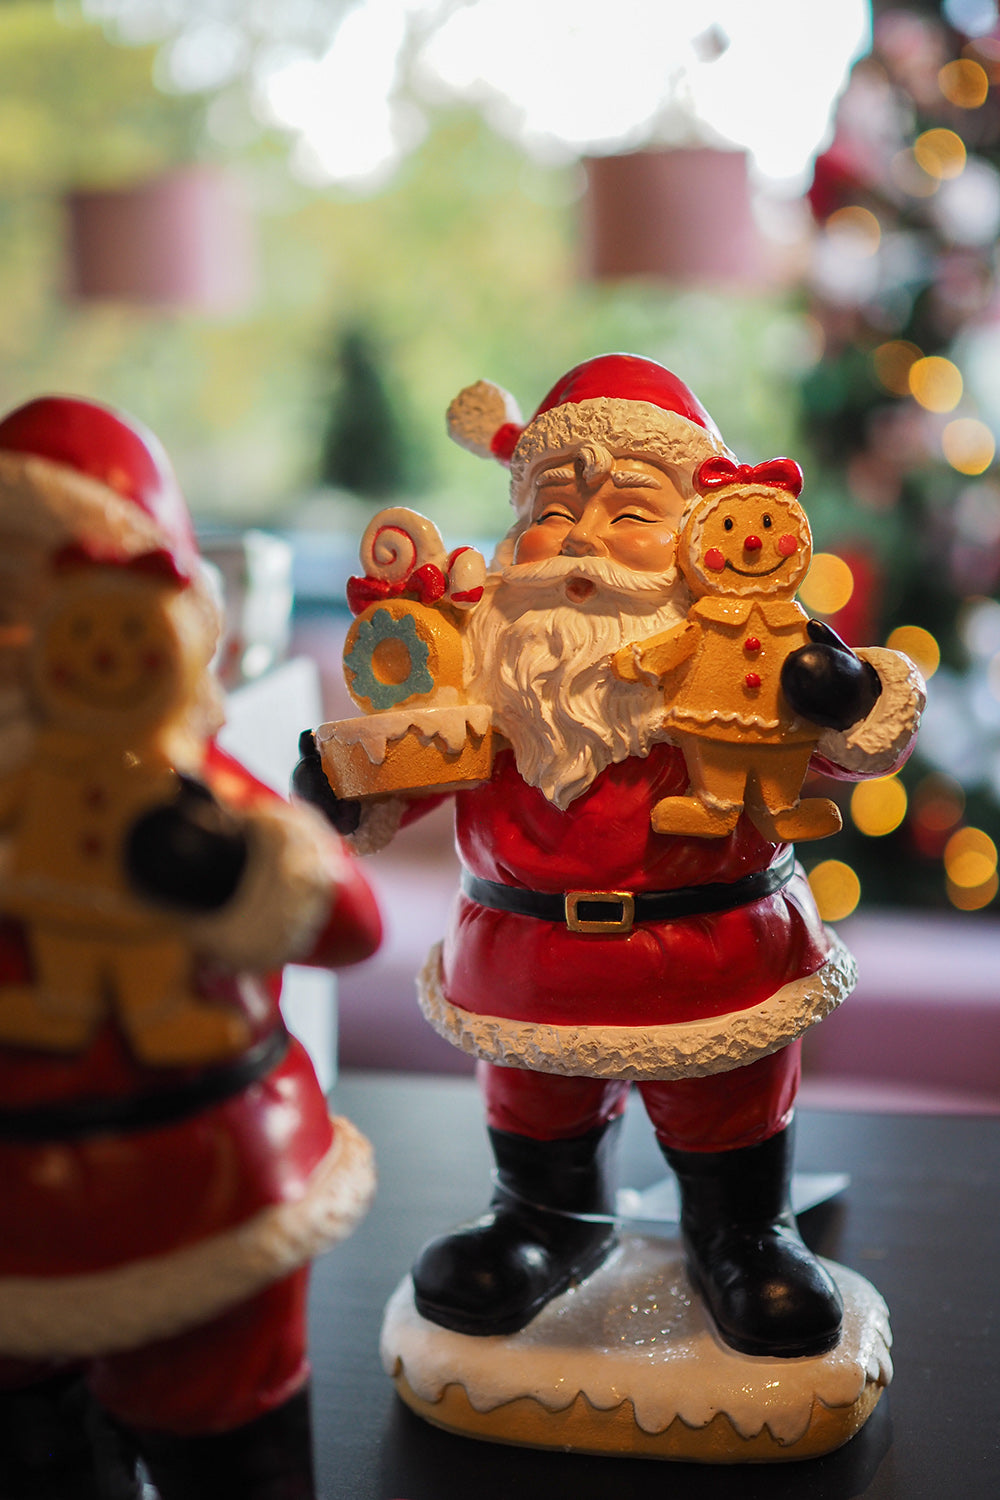 Viv! Christmas Kerstbeeld - Kerstman met Snoep en Gingerbread Mannetje - rood - 23cm